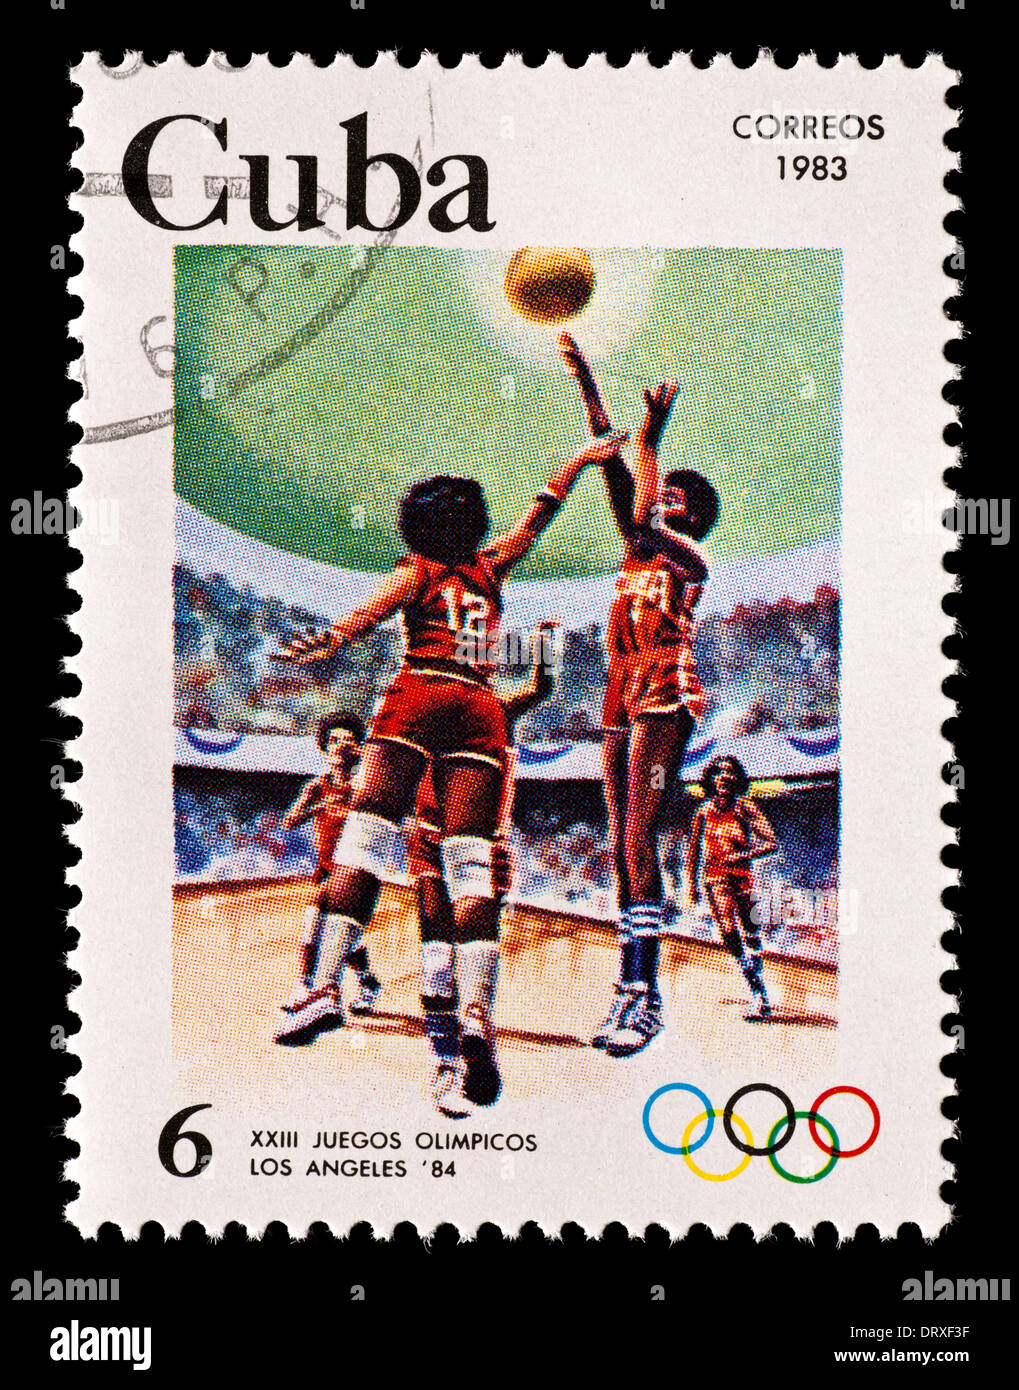 Briefmarke aus Kuba mit Basketball-Spieler, für die Olympischen Spiele 1984 in Los Angeles ausgestellt. Stockfoto